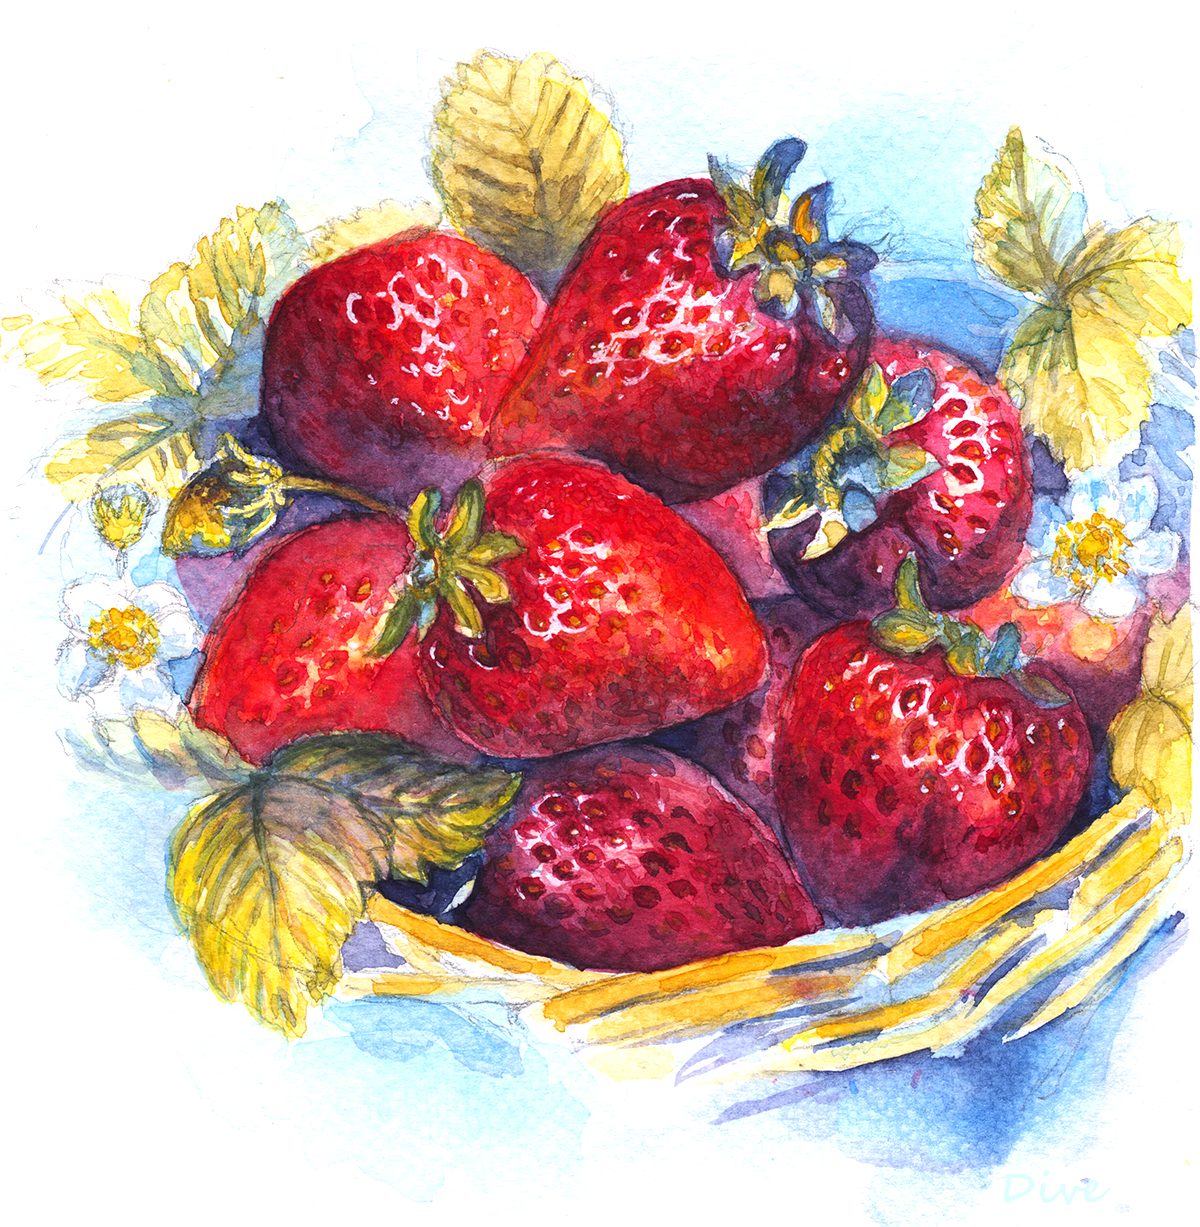 Strowberry crop